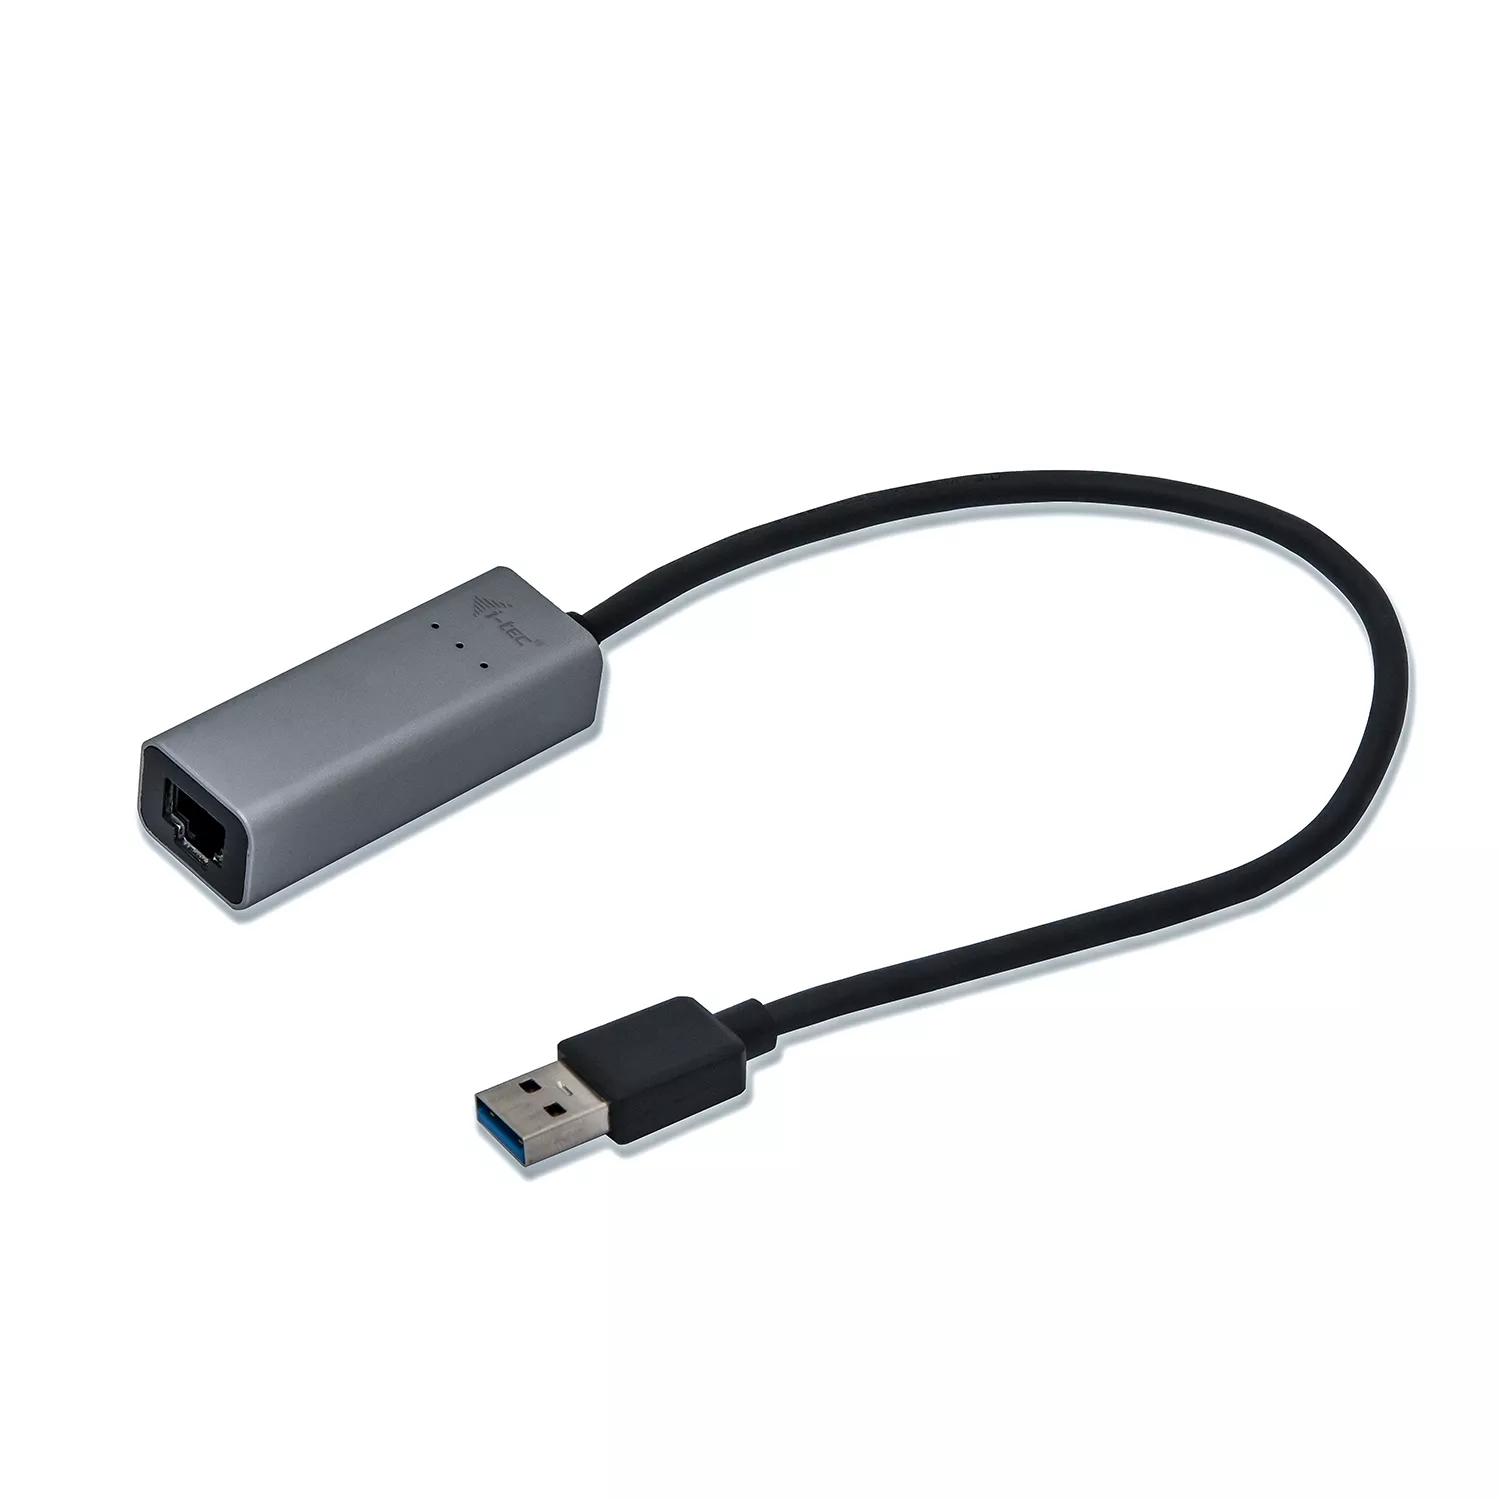 Vente I-TEC USB 3.0 Metal Gigabit Ethernet Adapter 1xUSB i-tec au meilleur prix - visuel 2